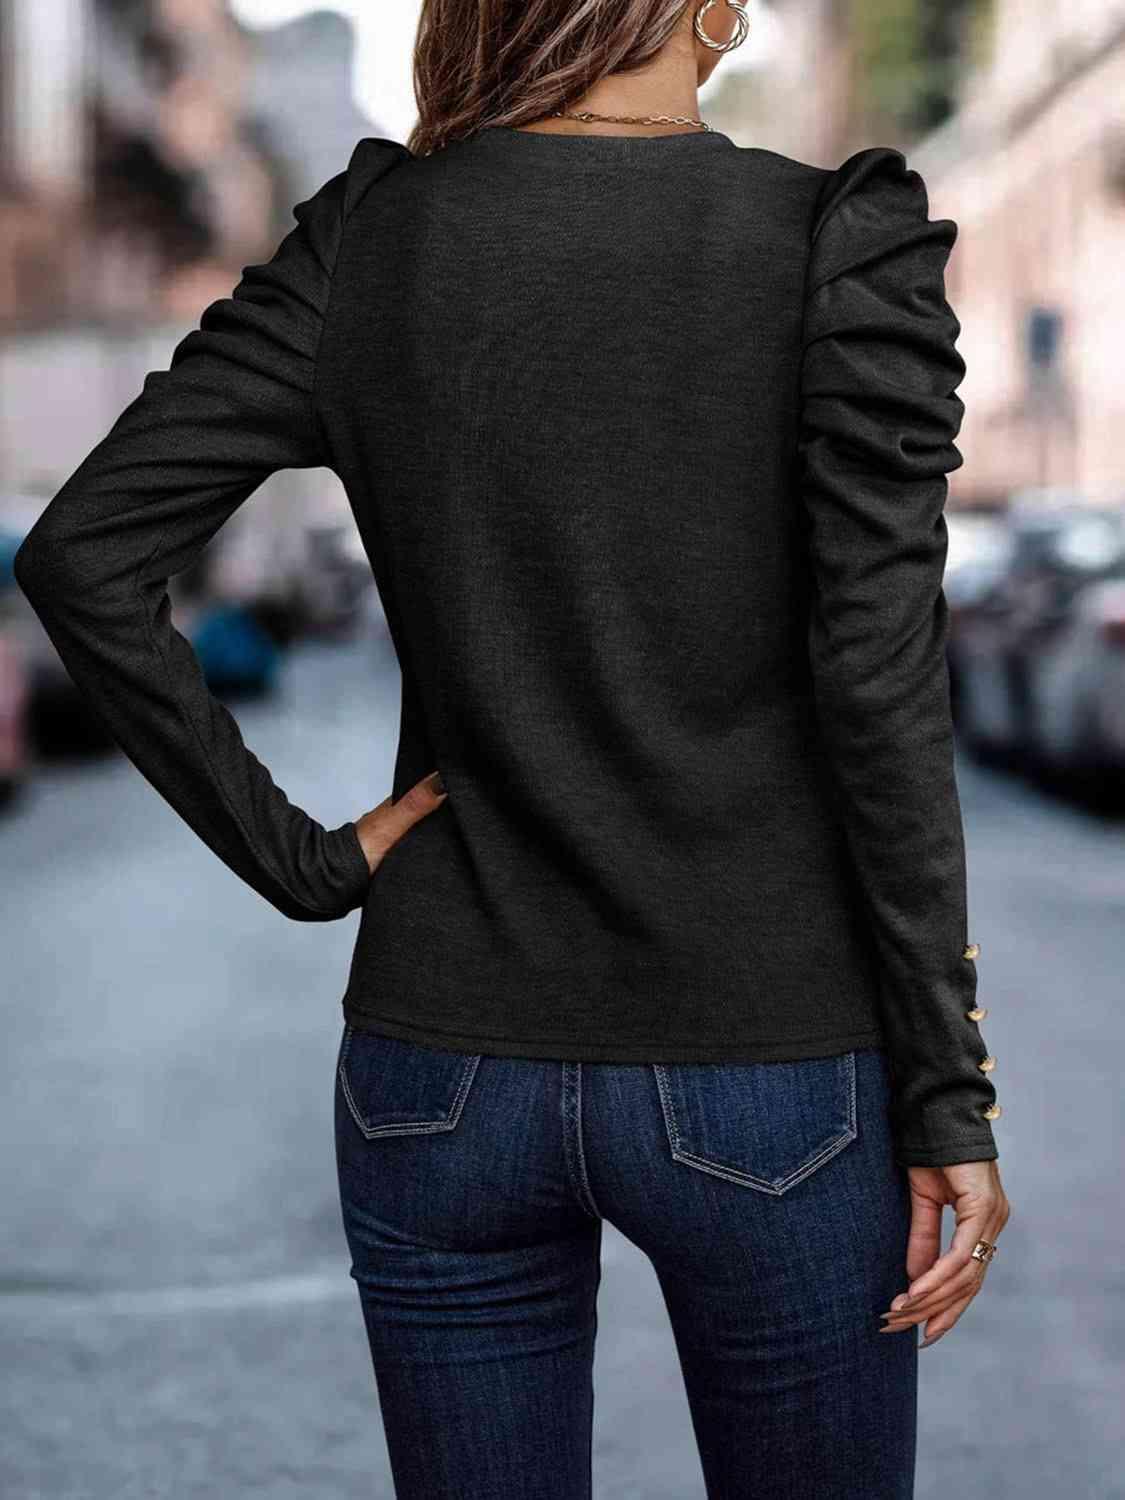 Bona Fide Fashion - Decorative Button Puff Sleeve T-Shirt - Women Fashion - Bona Fide Fashion